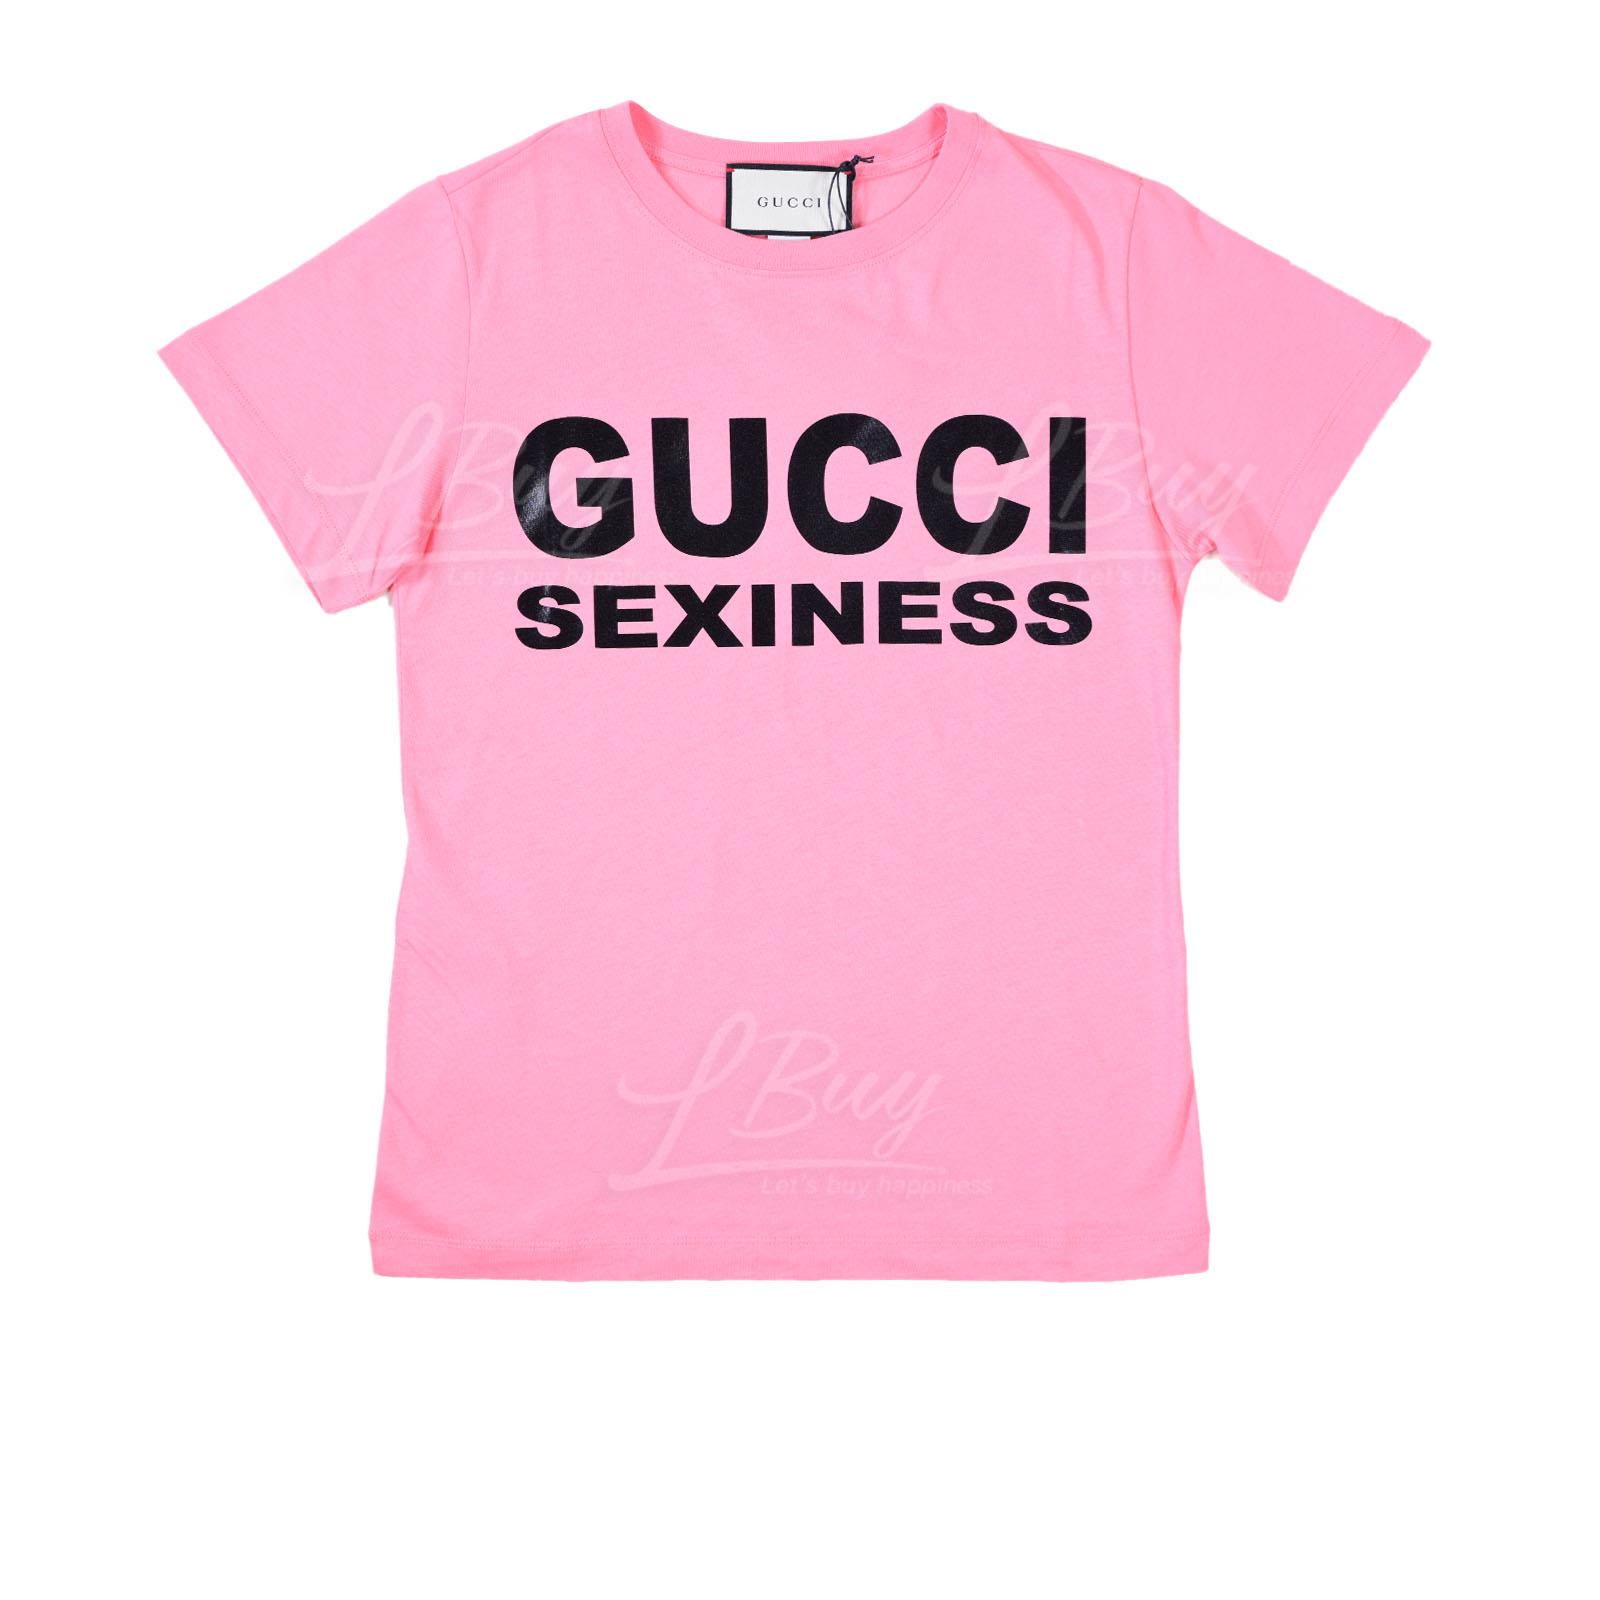 Gucci Sexiness Short Sleeve T-Shirt Pink